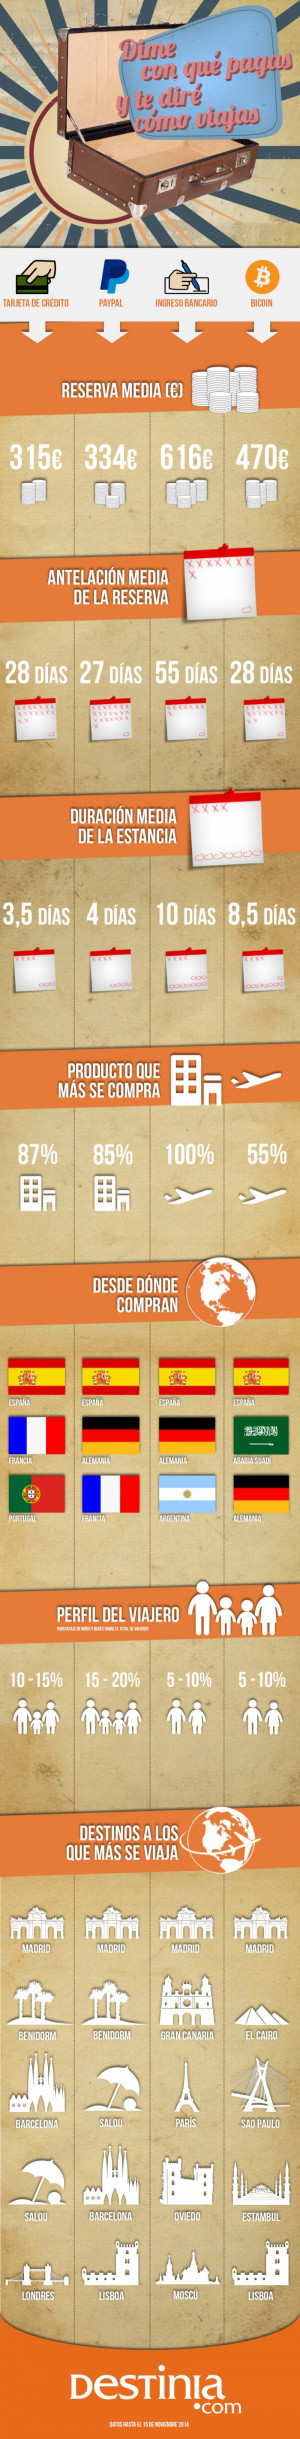 Infografía: cómo son las reservas de viajes según el método de pago